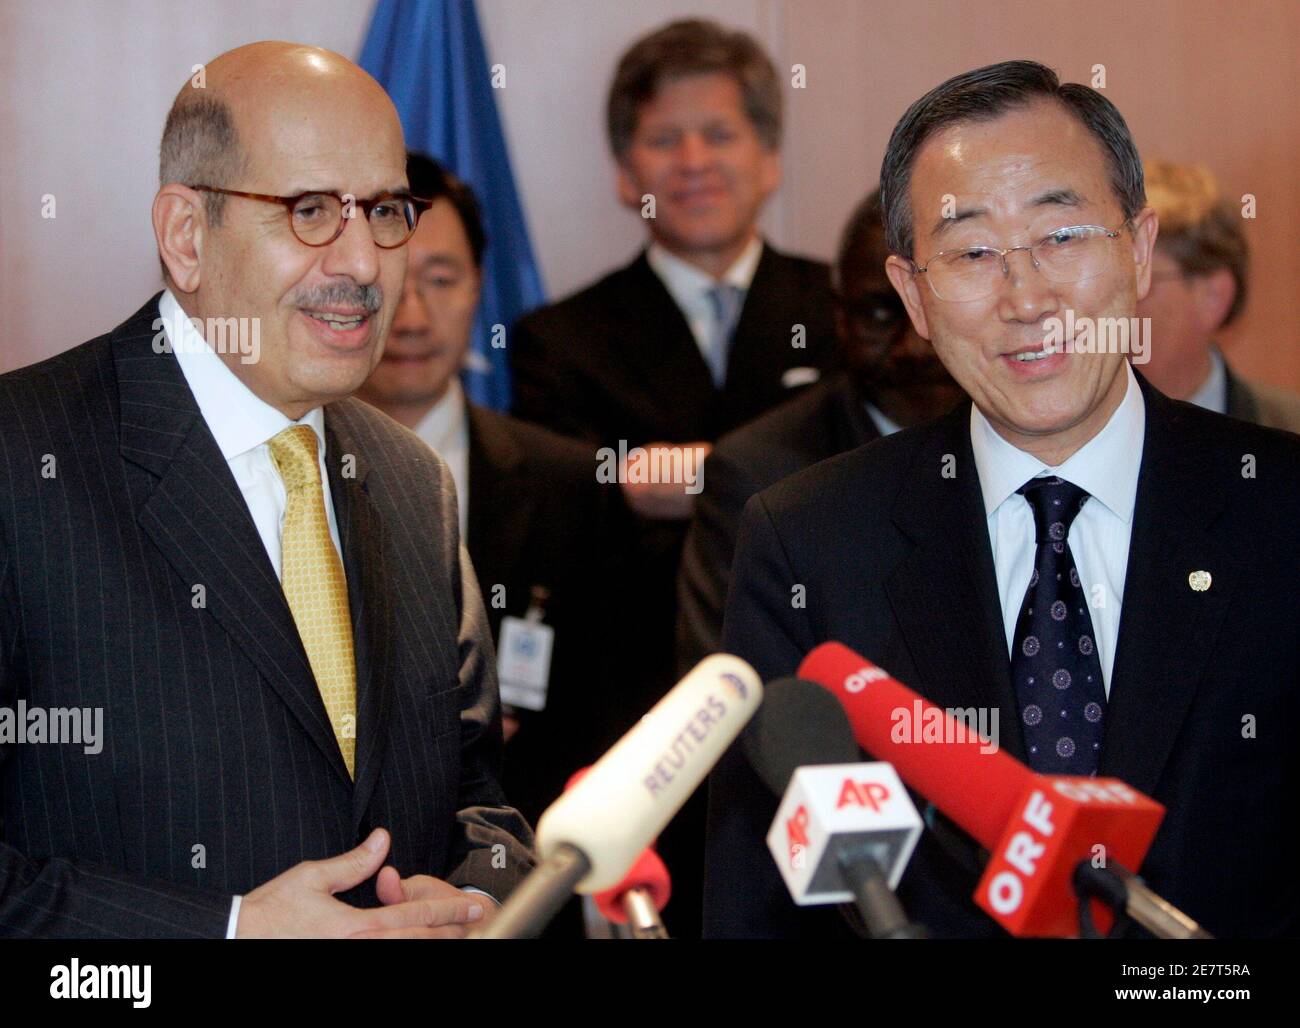 El Secretario General de las Naciones Unidas, Ban Ki-moon (R), y el Director General de la Agencia Internacional de Energía Atómica (OIEA), Mohamed ElBaradei, le brindan información a los medios de comunicación en Viena el 23 de febrero de 2007. REUTERS/Herwig Prammer (AUSTRIA) Foto de stock